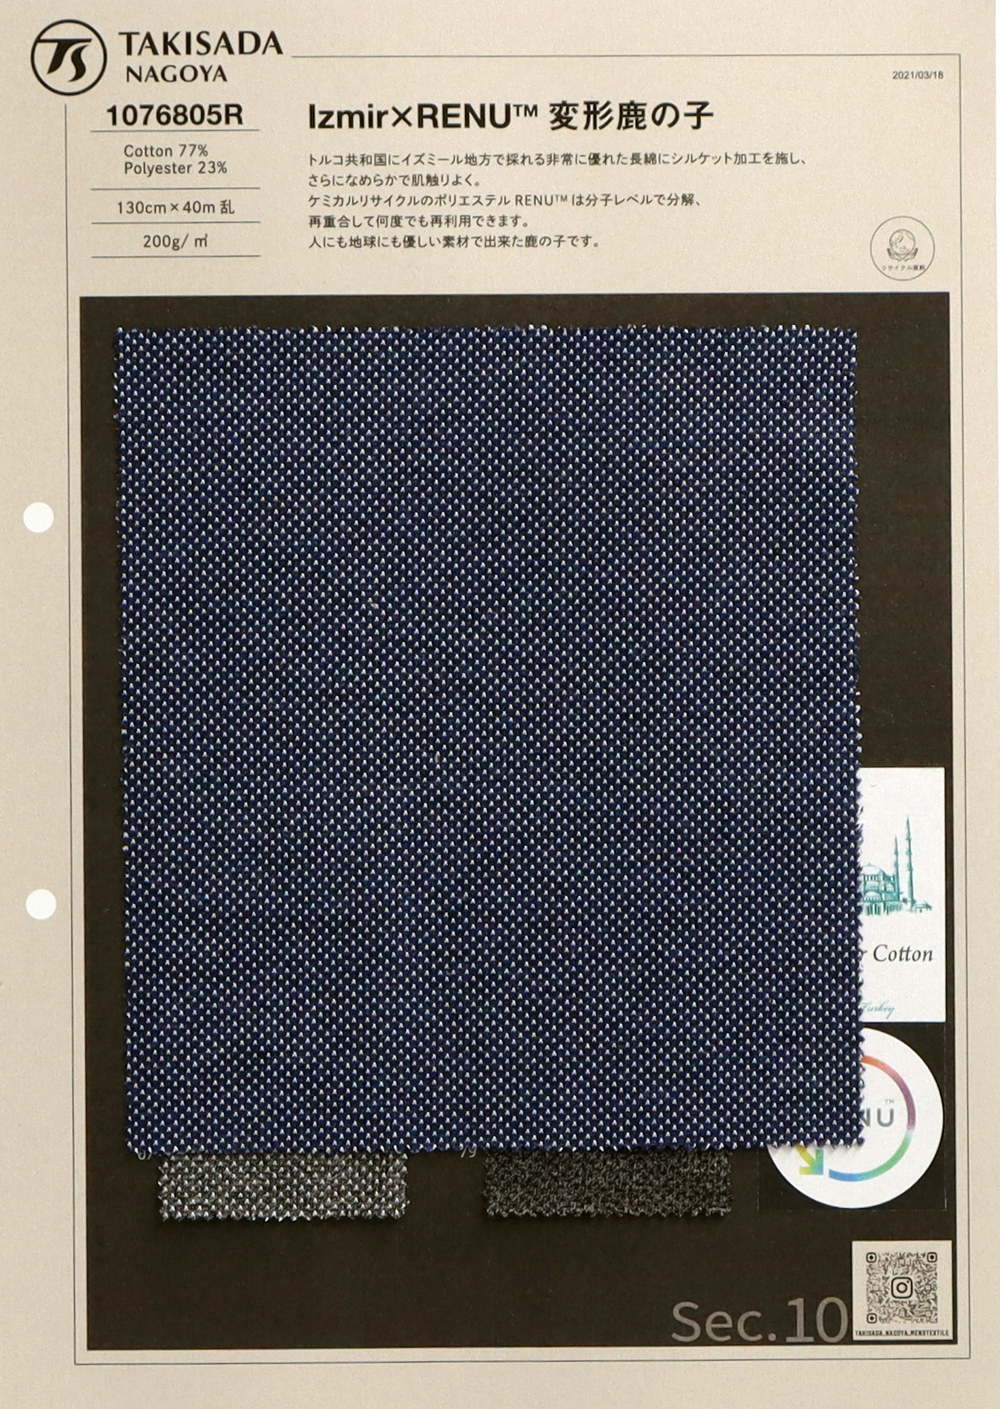 1076805R Mũi đan Hạt Gạo × RENU ™ Kanoko Biến Dạng[Vải] Takisada Nagoya